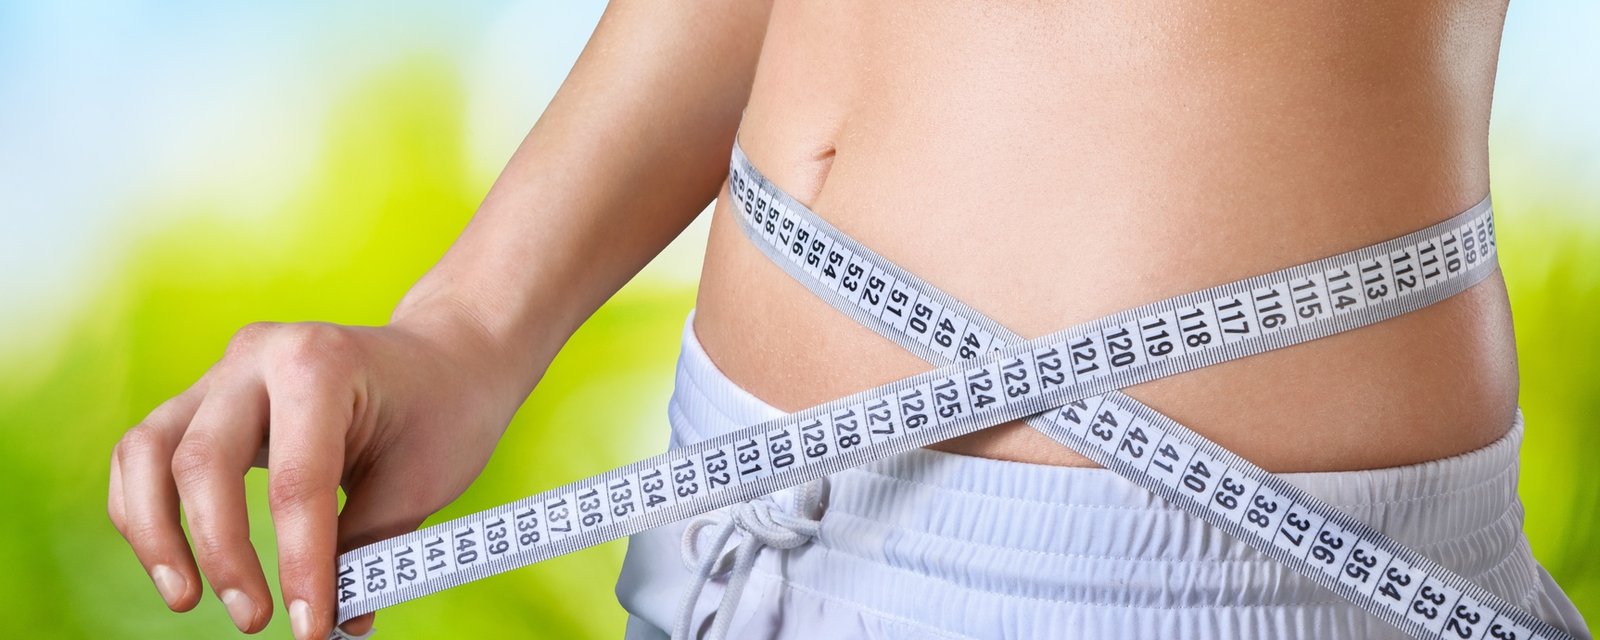 11 trucs pour maigrir efficacement de façon durable